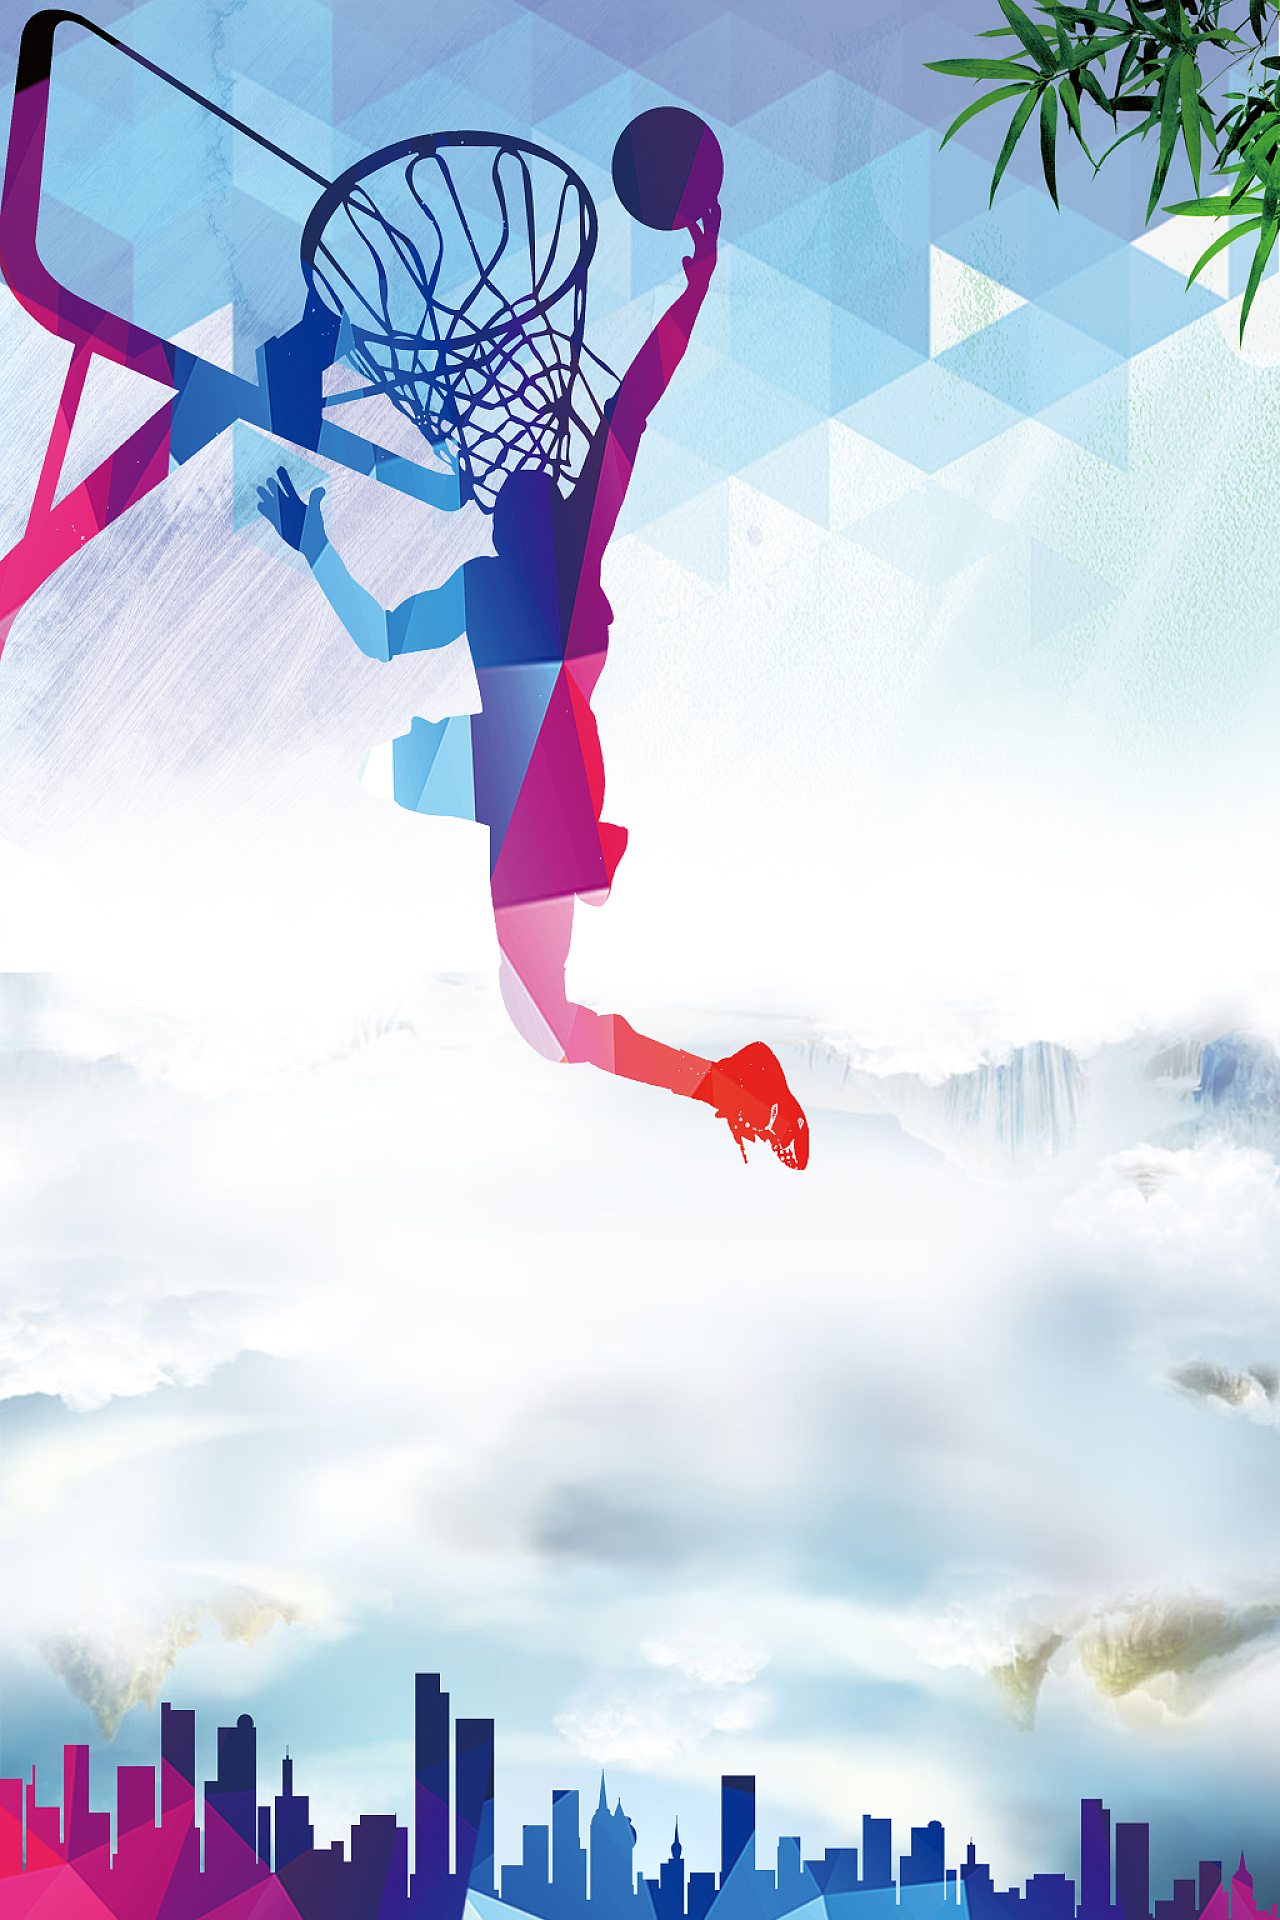 蓝色时尚体育竞技运动项目设计海报背景素材